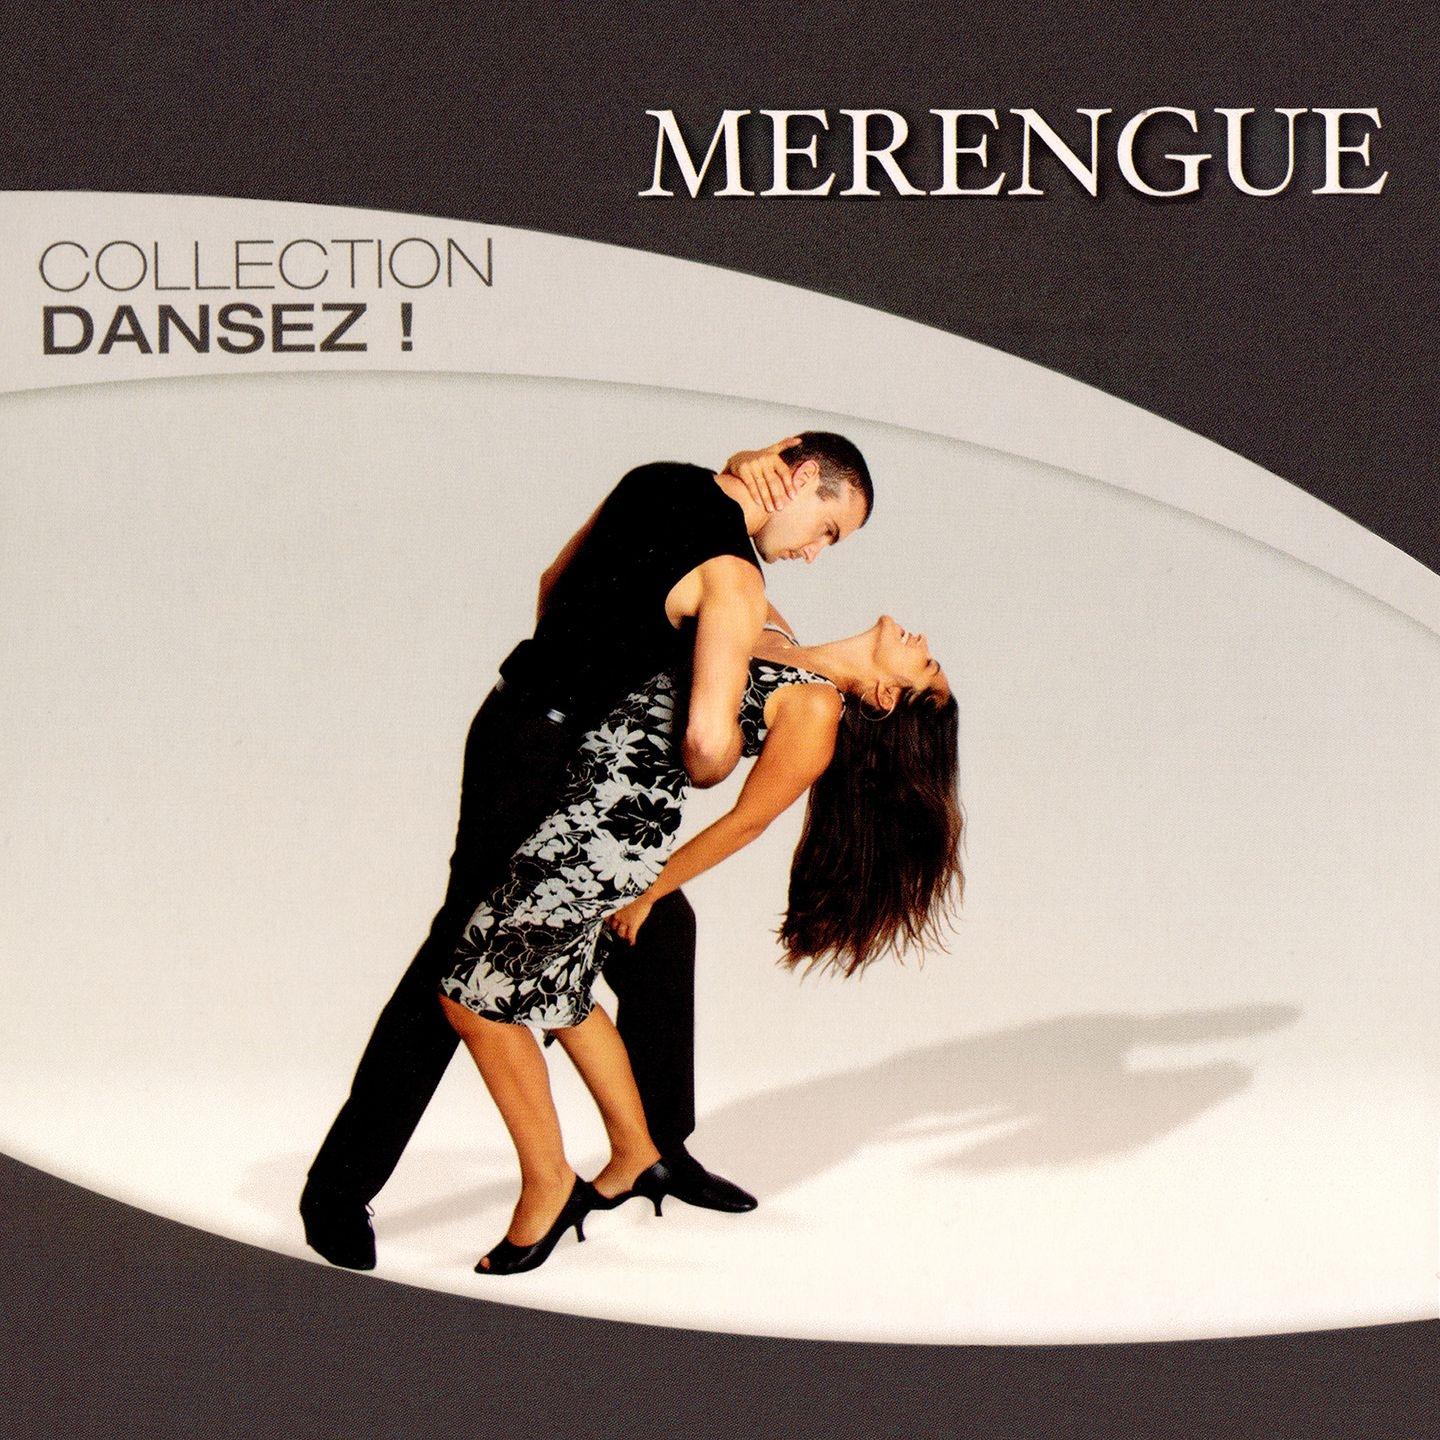 Collection Dansez : Merengue